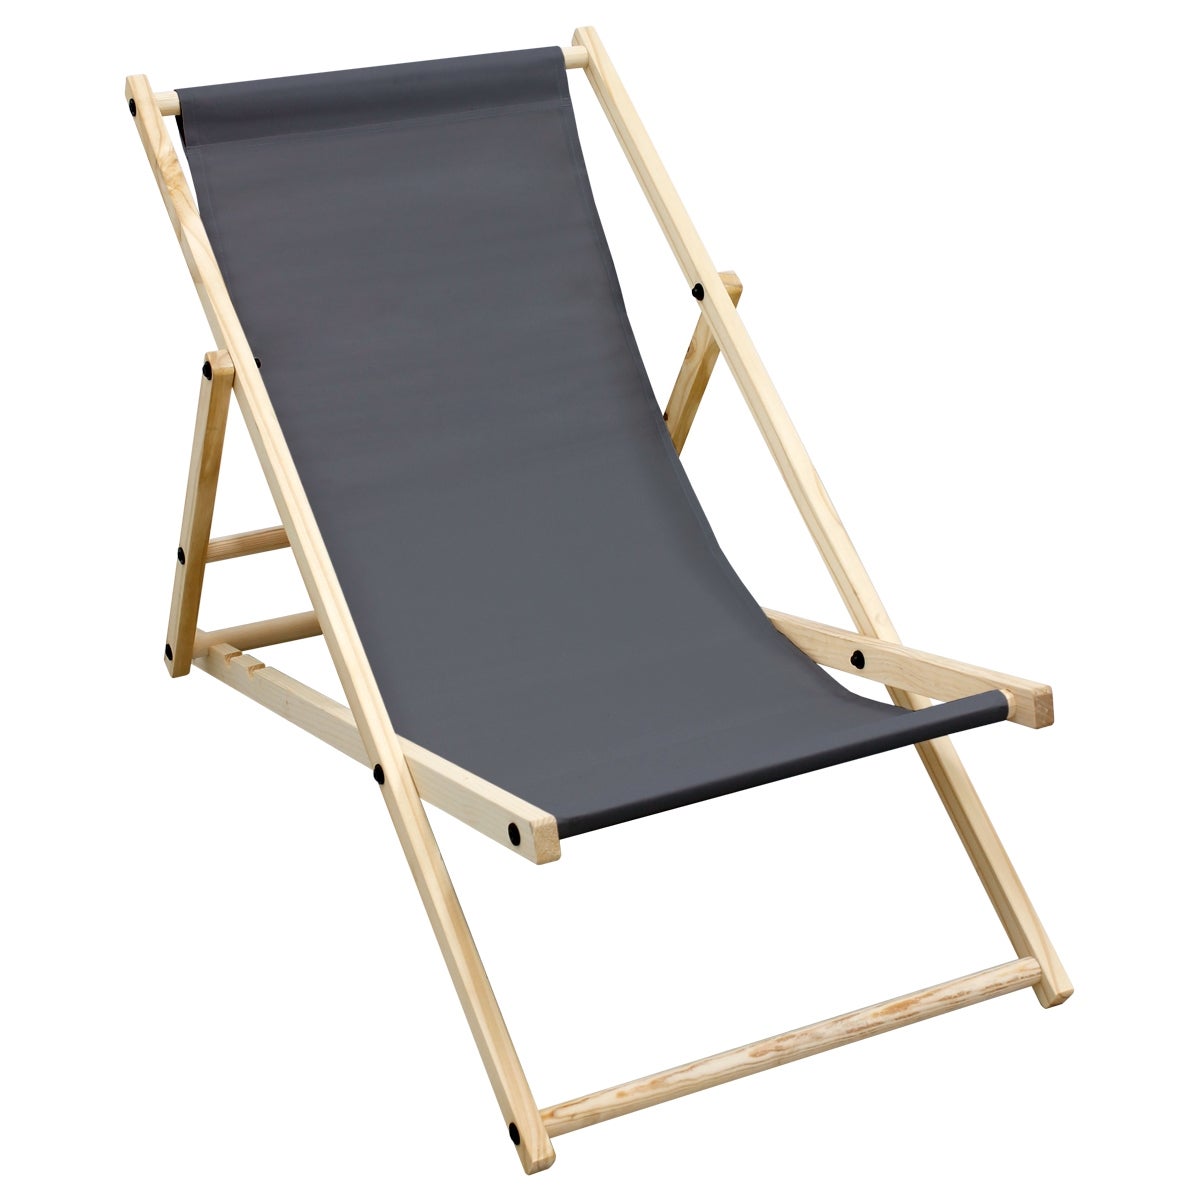 ECD Germany Liegestuhl klappbar aus Holz - 3 Liegepositionen - bis 120 kg - Anthrazit - Sonnenliege Gartenliege Relaxliege Strandliege Liege Strandstuhl Klappliegestuhl Holzklappstuhl Strandliegestuhl